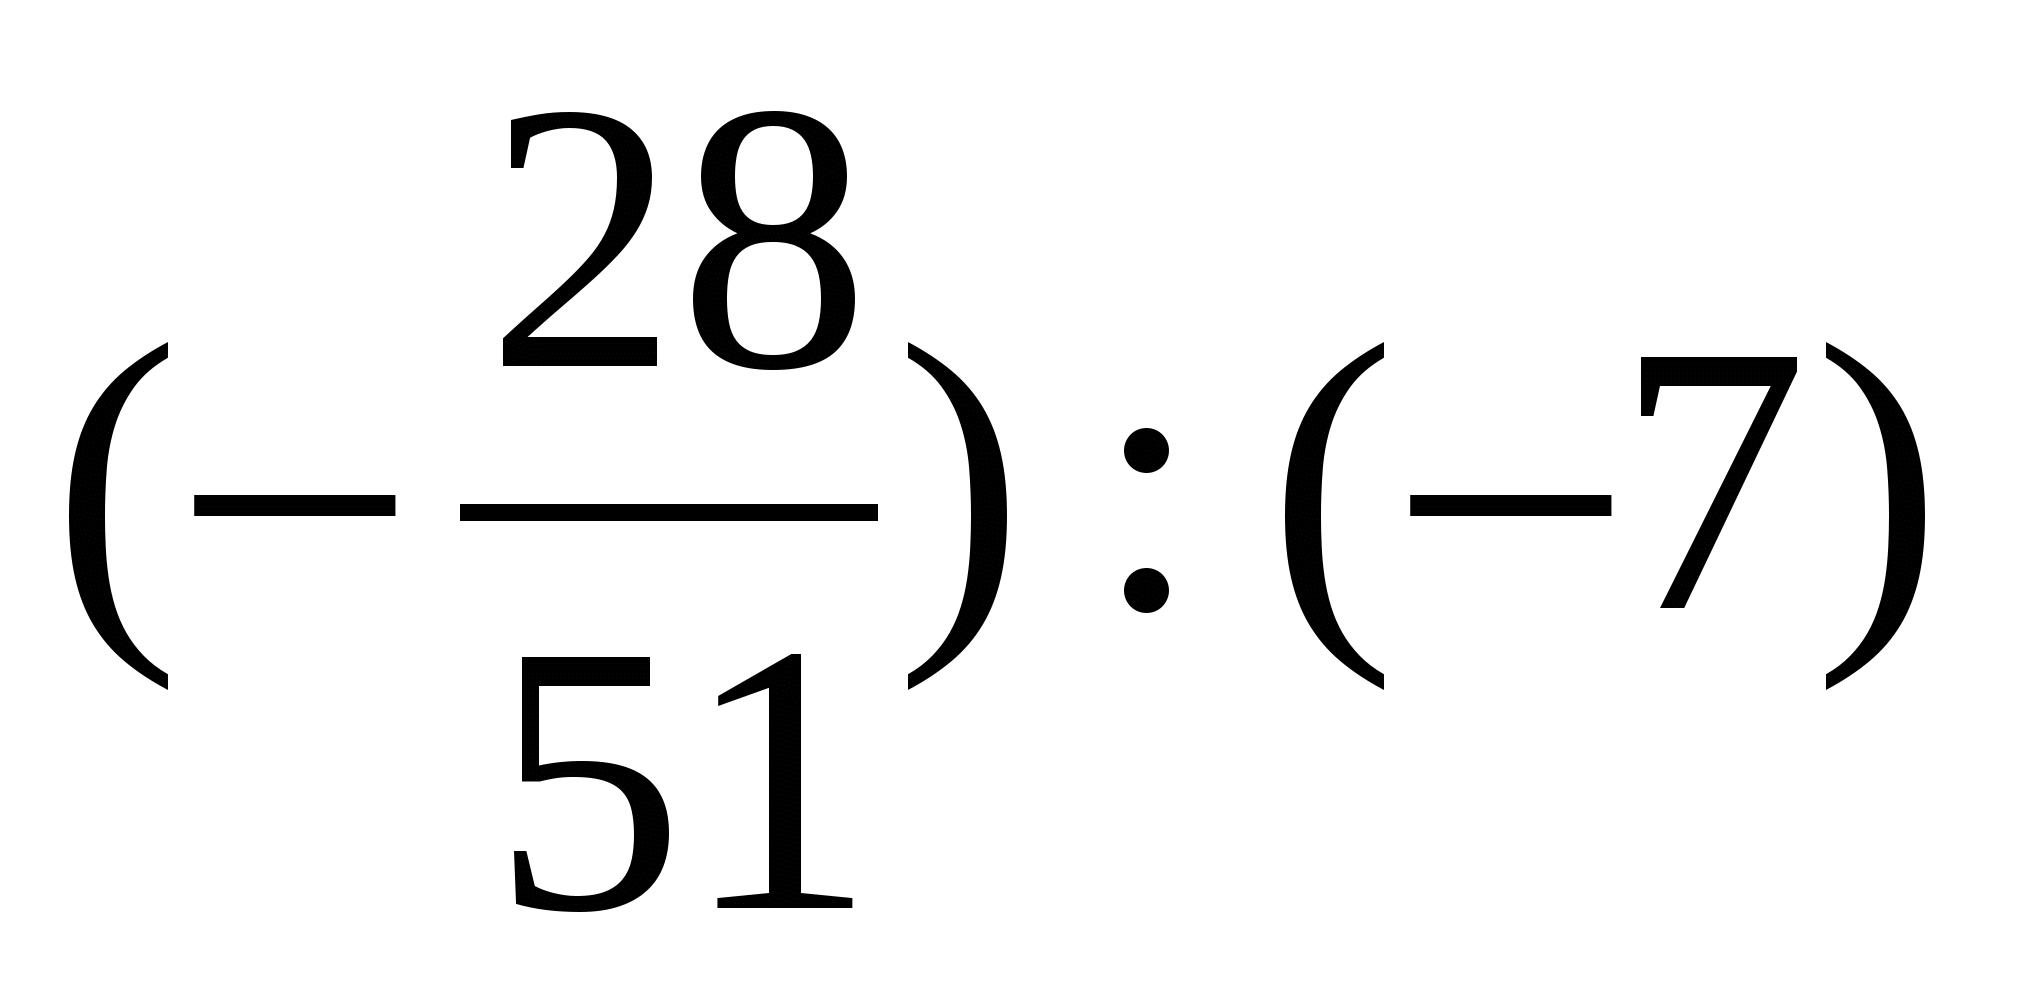 Тест умножение рациональных чисел